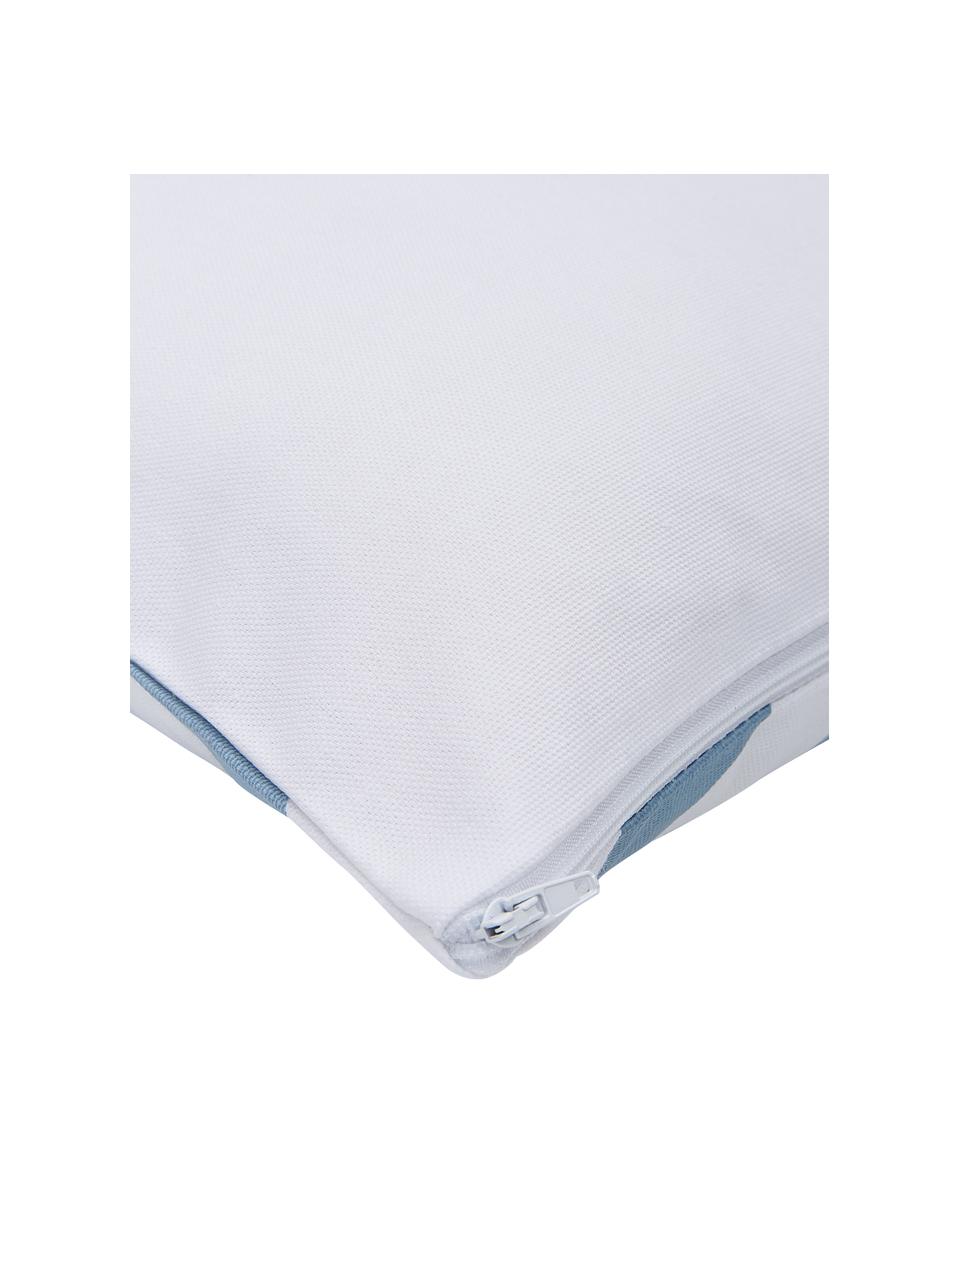 Kissenhülle Sera in Hellblau/Weiß mit grafischem Muster, 100% Baumwolle, Weiß, Hellblau, 45 x 45 cm